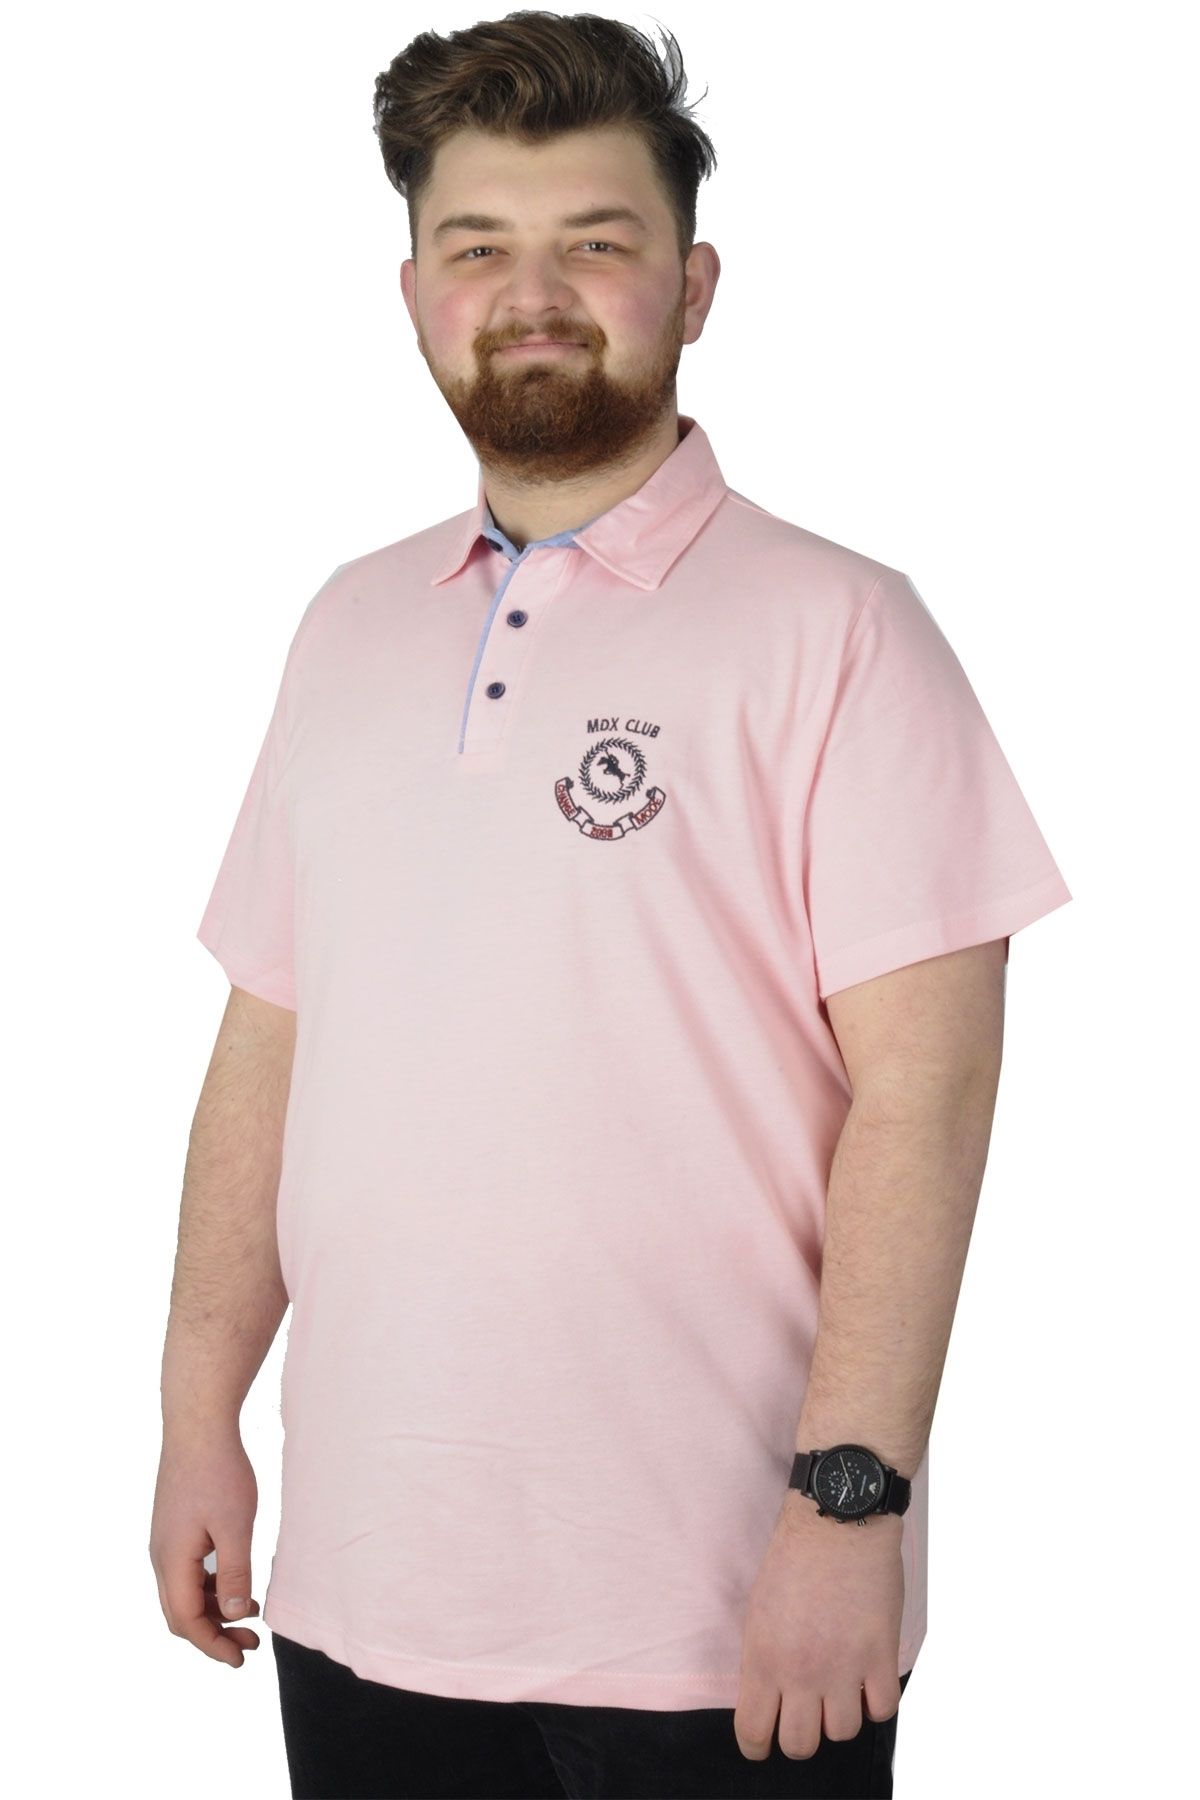 Мужская футболка большого размера Polo Mdx Club 22305 Лосось